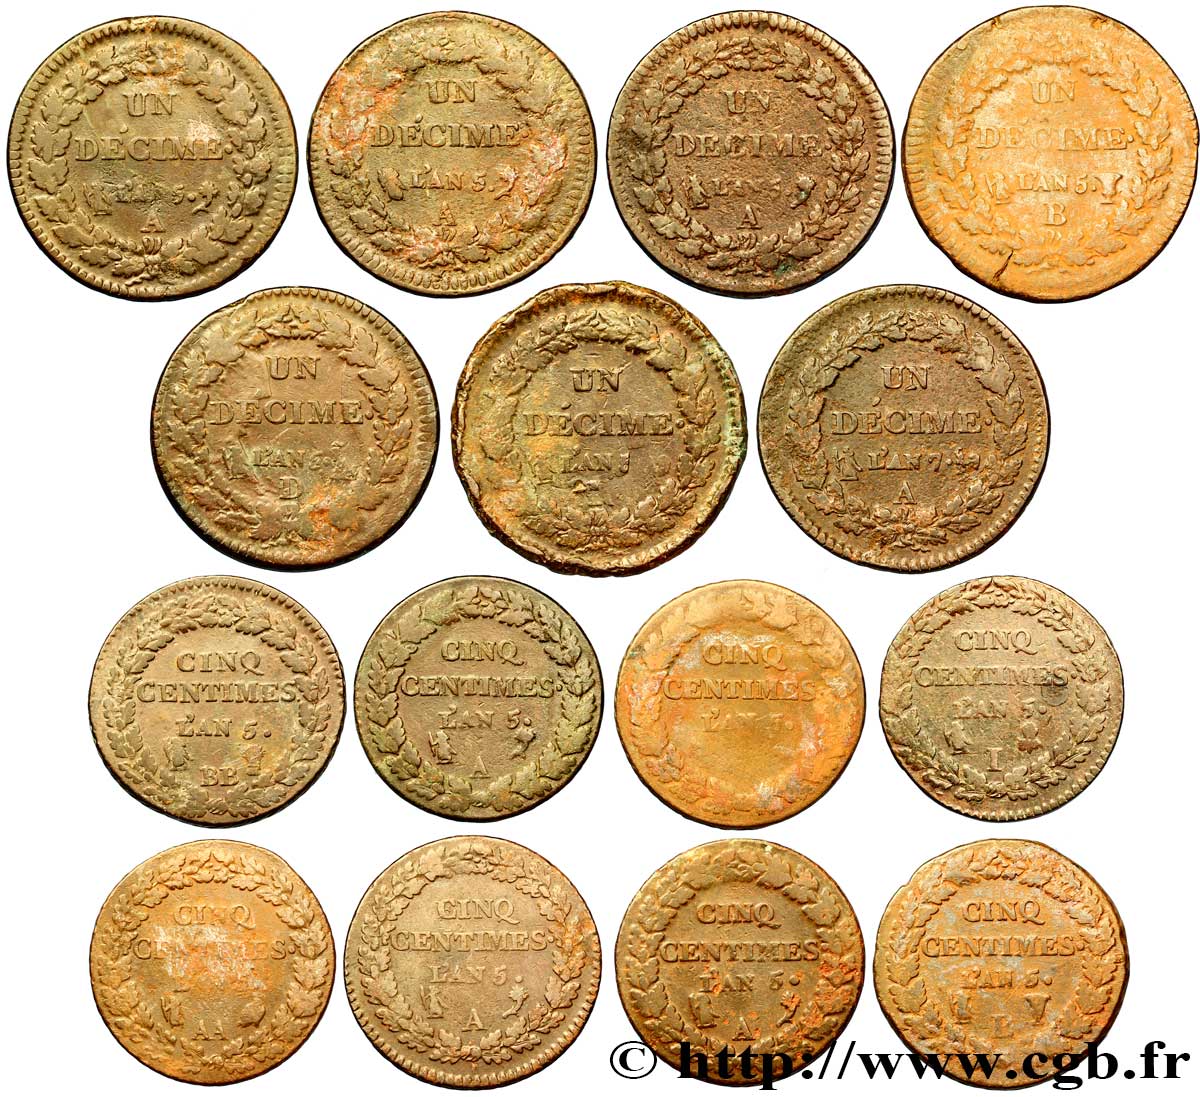 Lot de 7 pièces d’Un décime Dupré, grand module (F.129) et de 8 pièces de Cinq centimes Dupré, grand module (F.115) n.d. - F.-/- SGE/S 